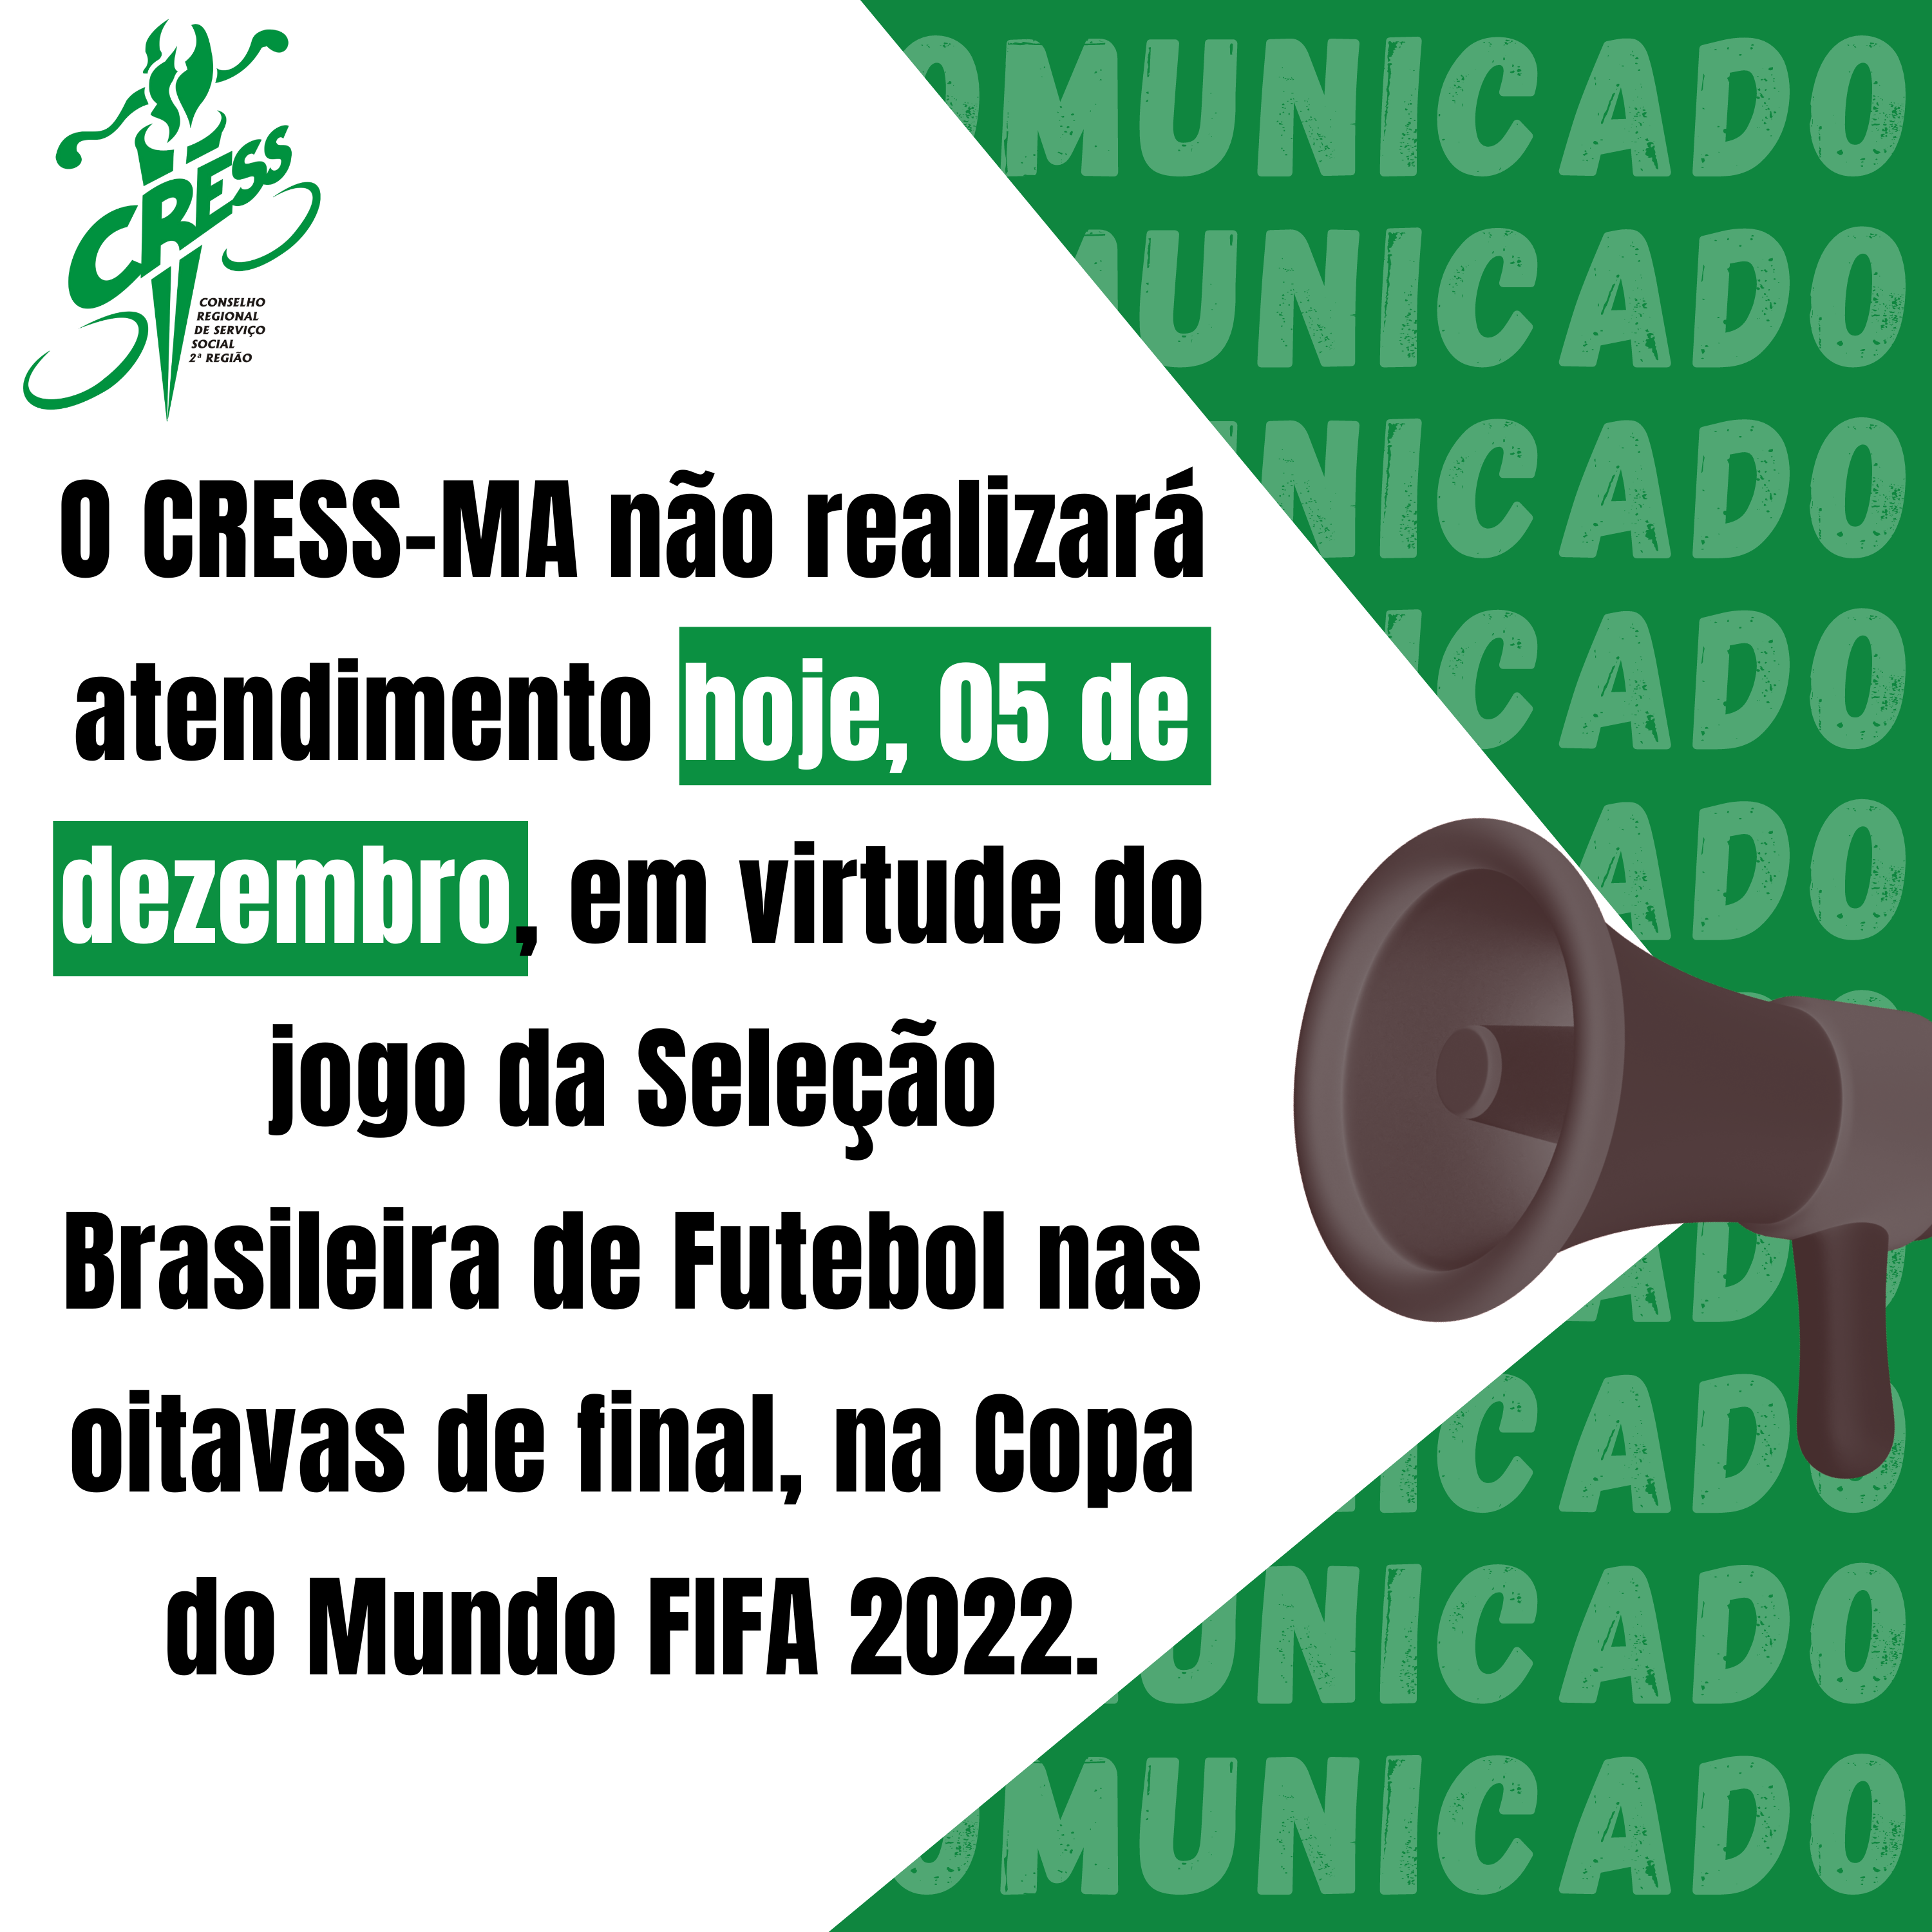 COMUNICADO 2022 jogo brasil 05.12